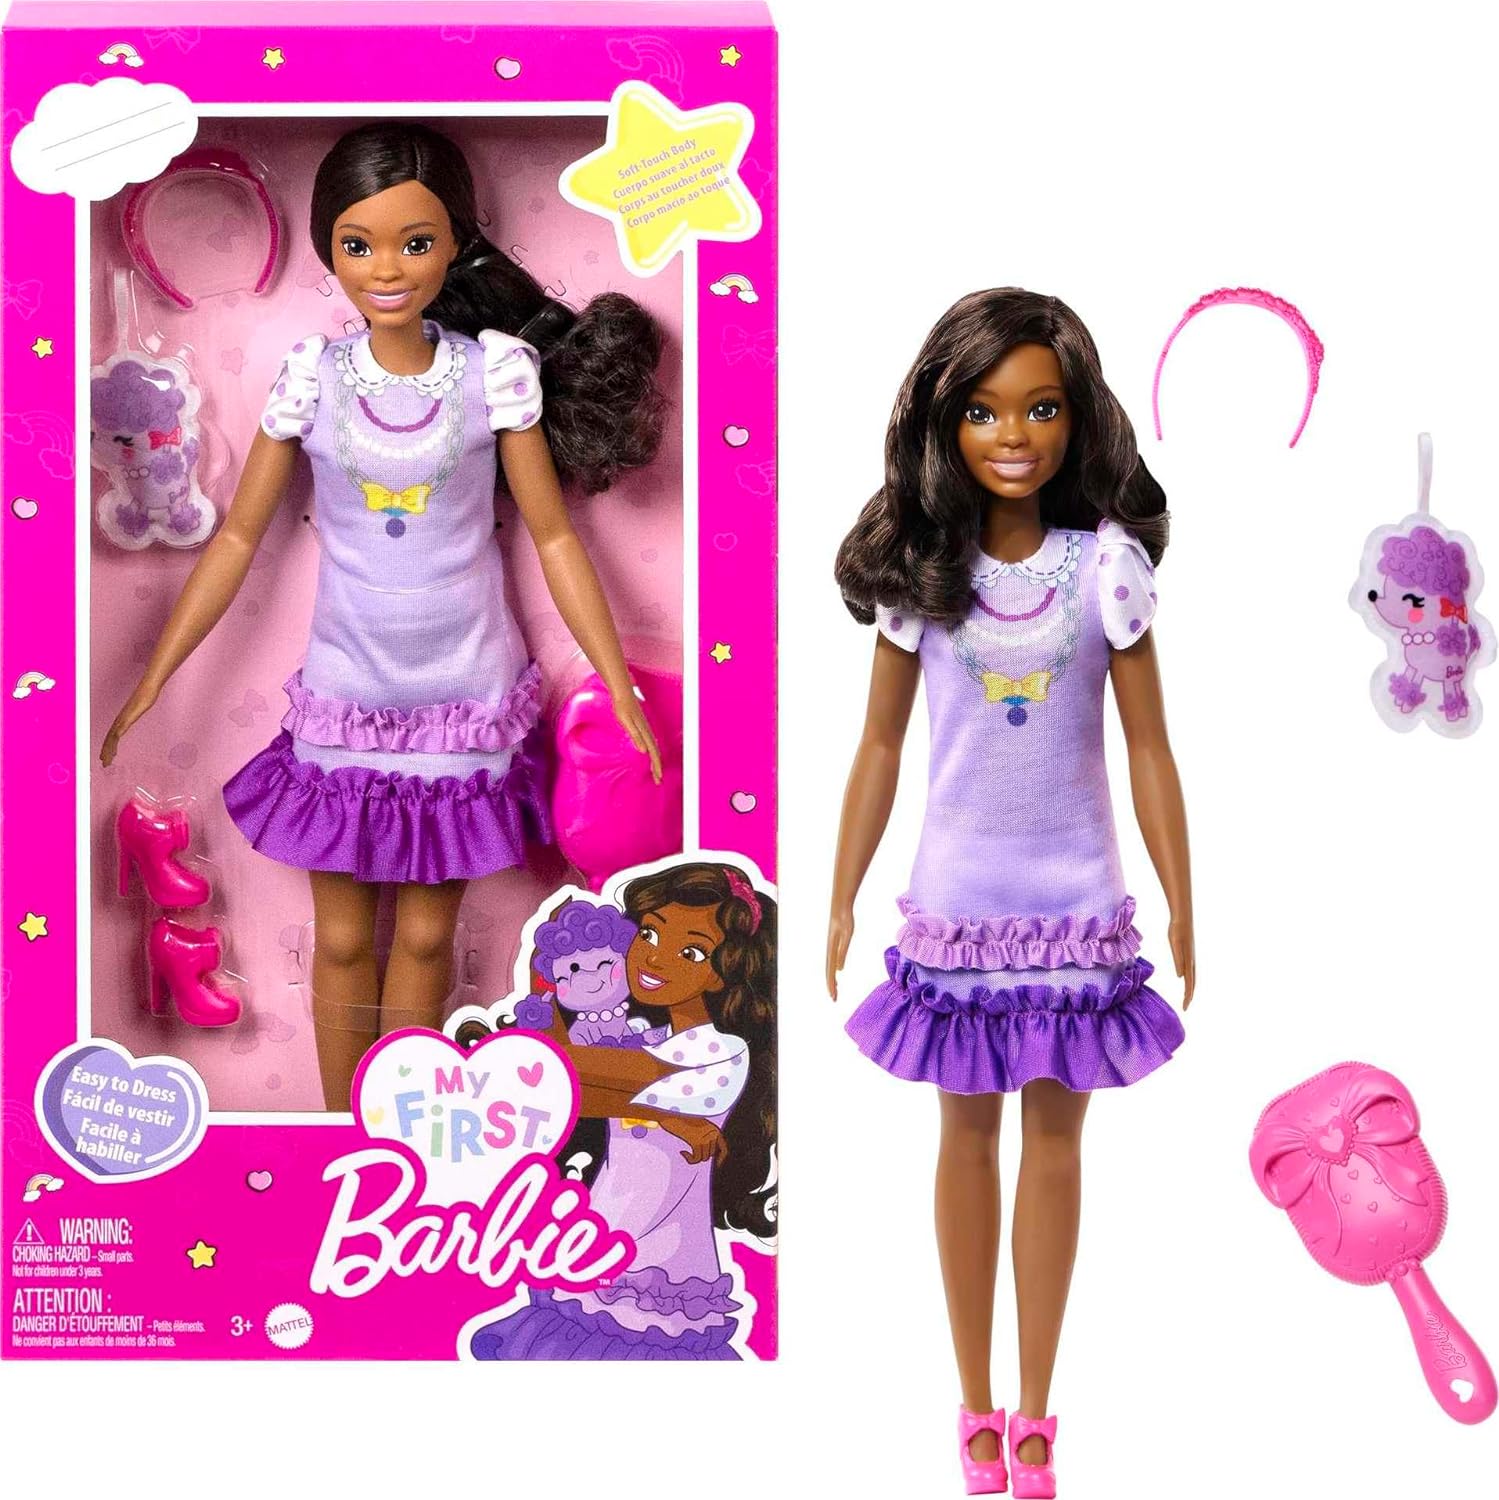 13.5" My First Barbie Preschool Dolls: Brooklyn w/ Plush Poodle $8.39  Malibu w/ Kitten or Renee w/ Squirrel  $9.79 + Free Shipping w/ Prime or on $35+